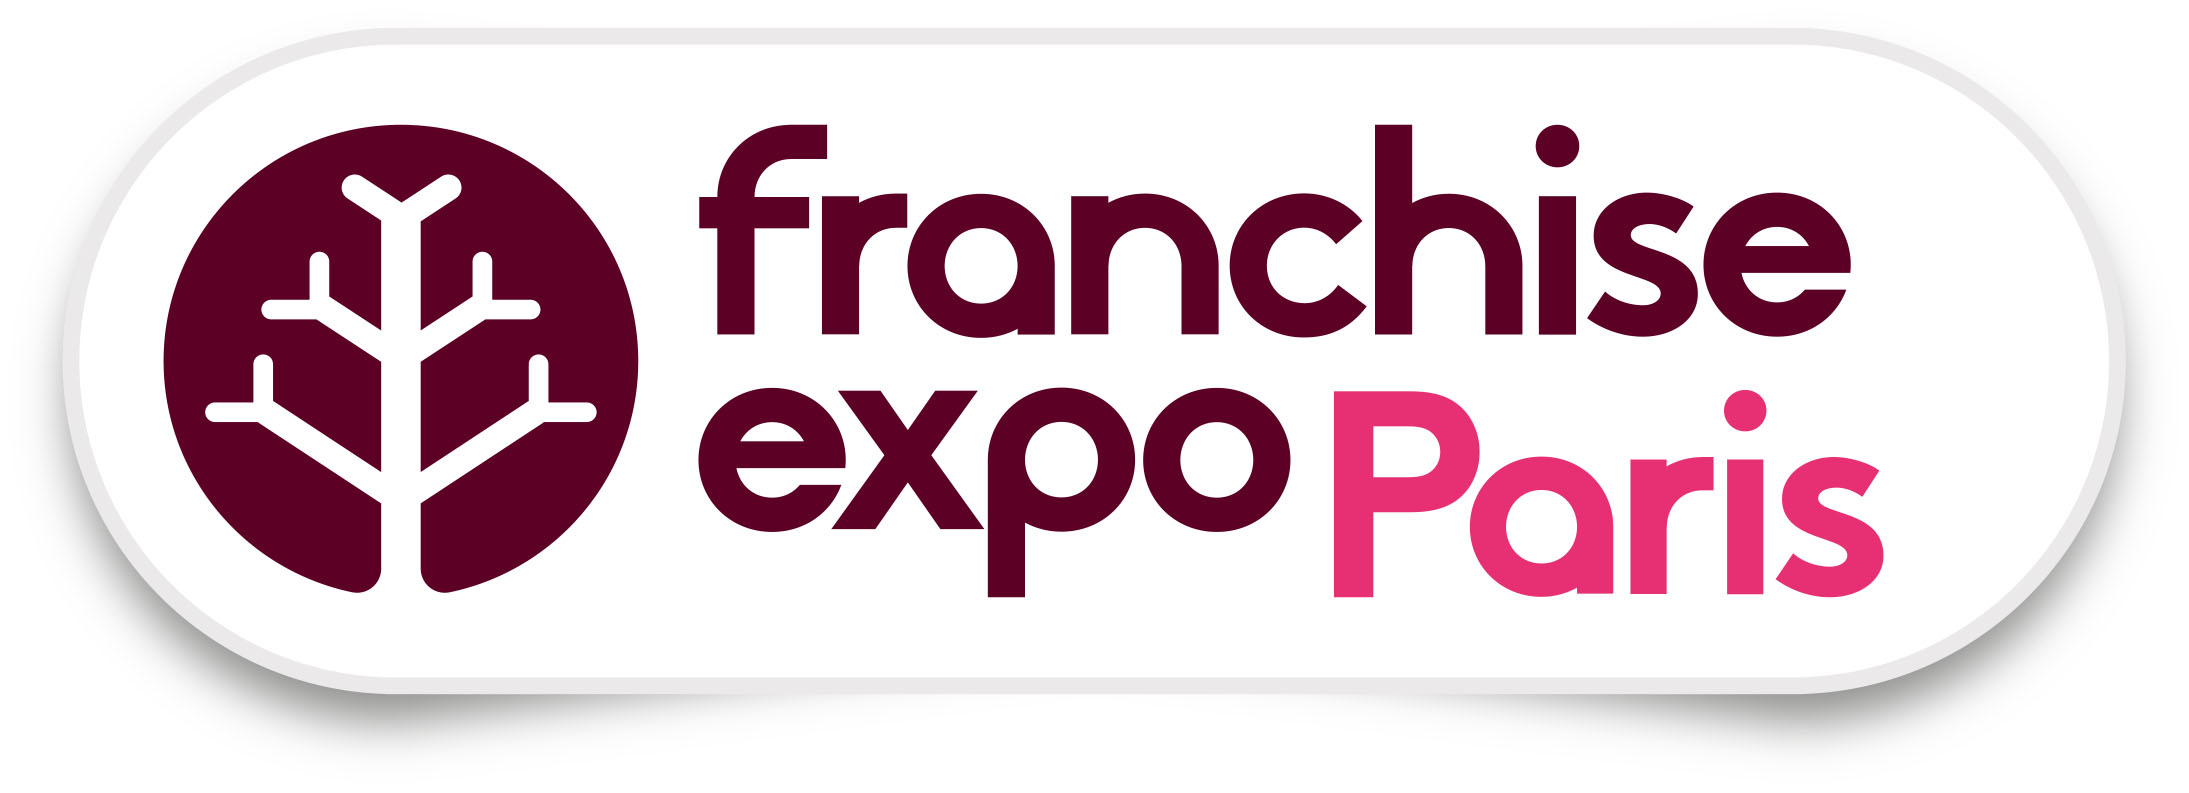 logo franchise expo2018